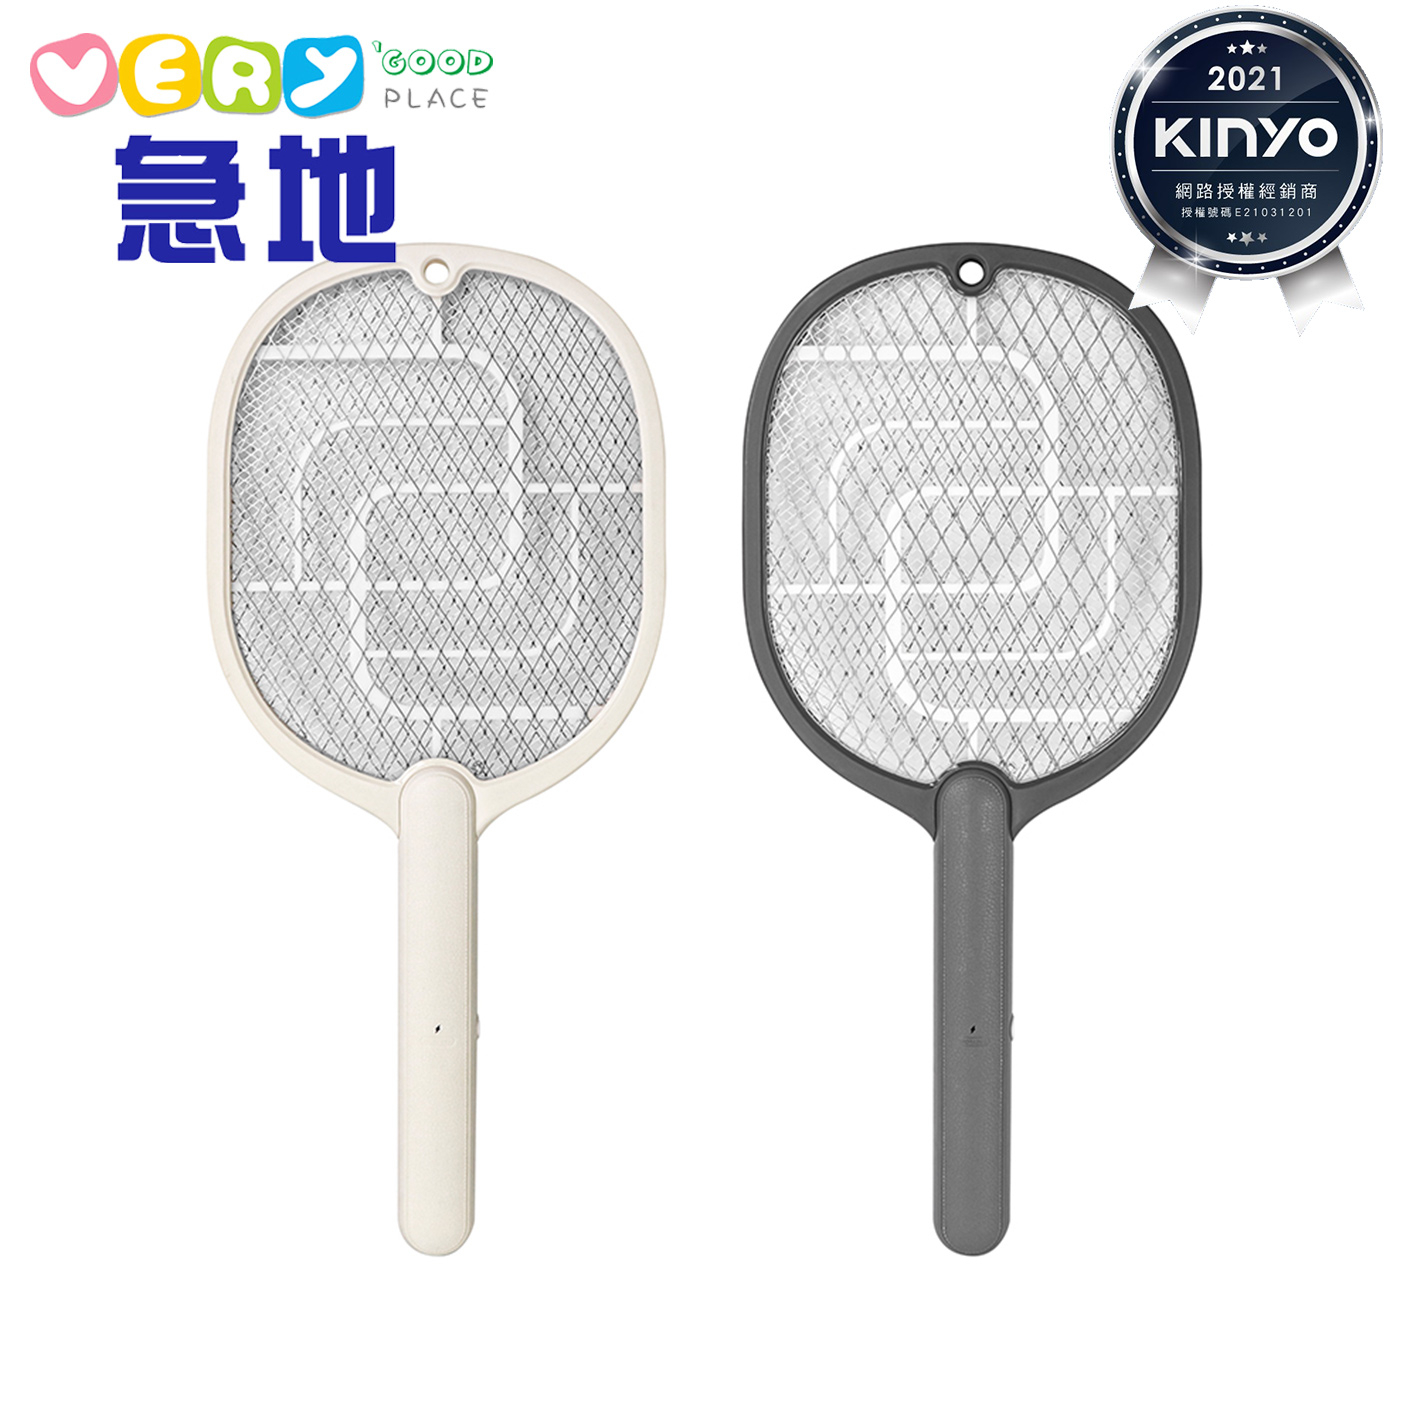 【KINYO】電池式三層電網捕蚊拍 捕蚊拍 電蚊拍 (CM-2310)